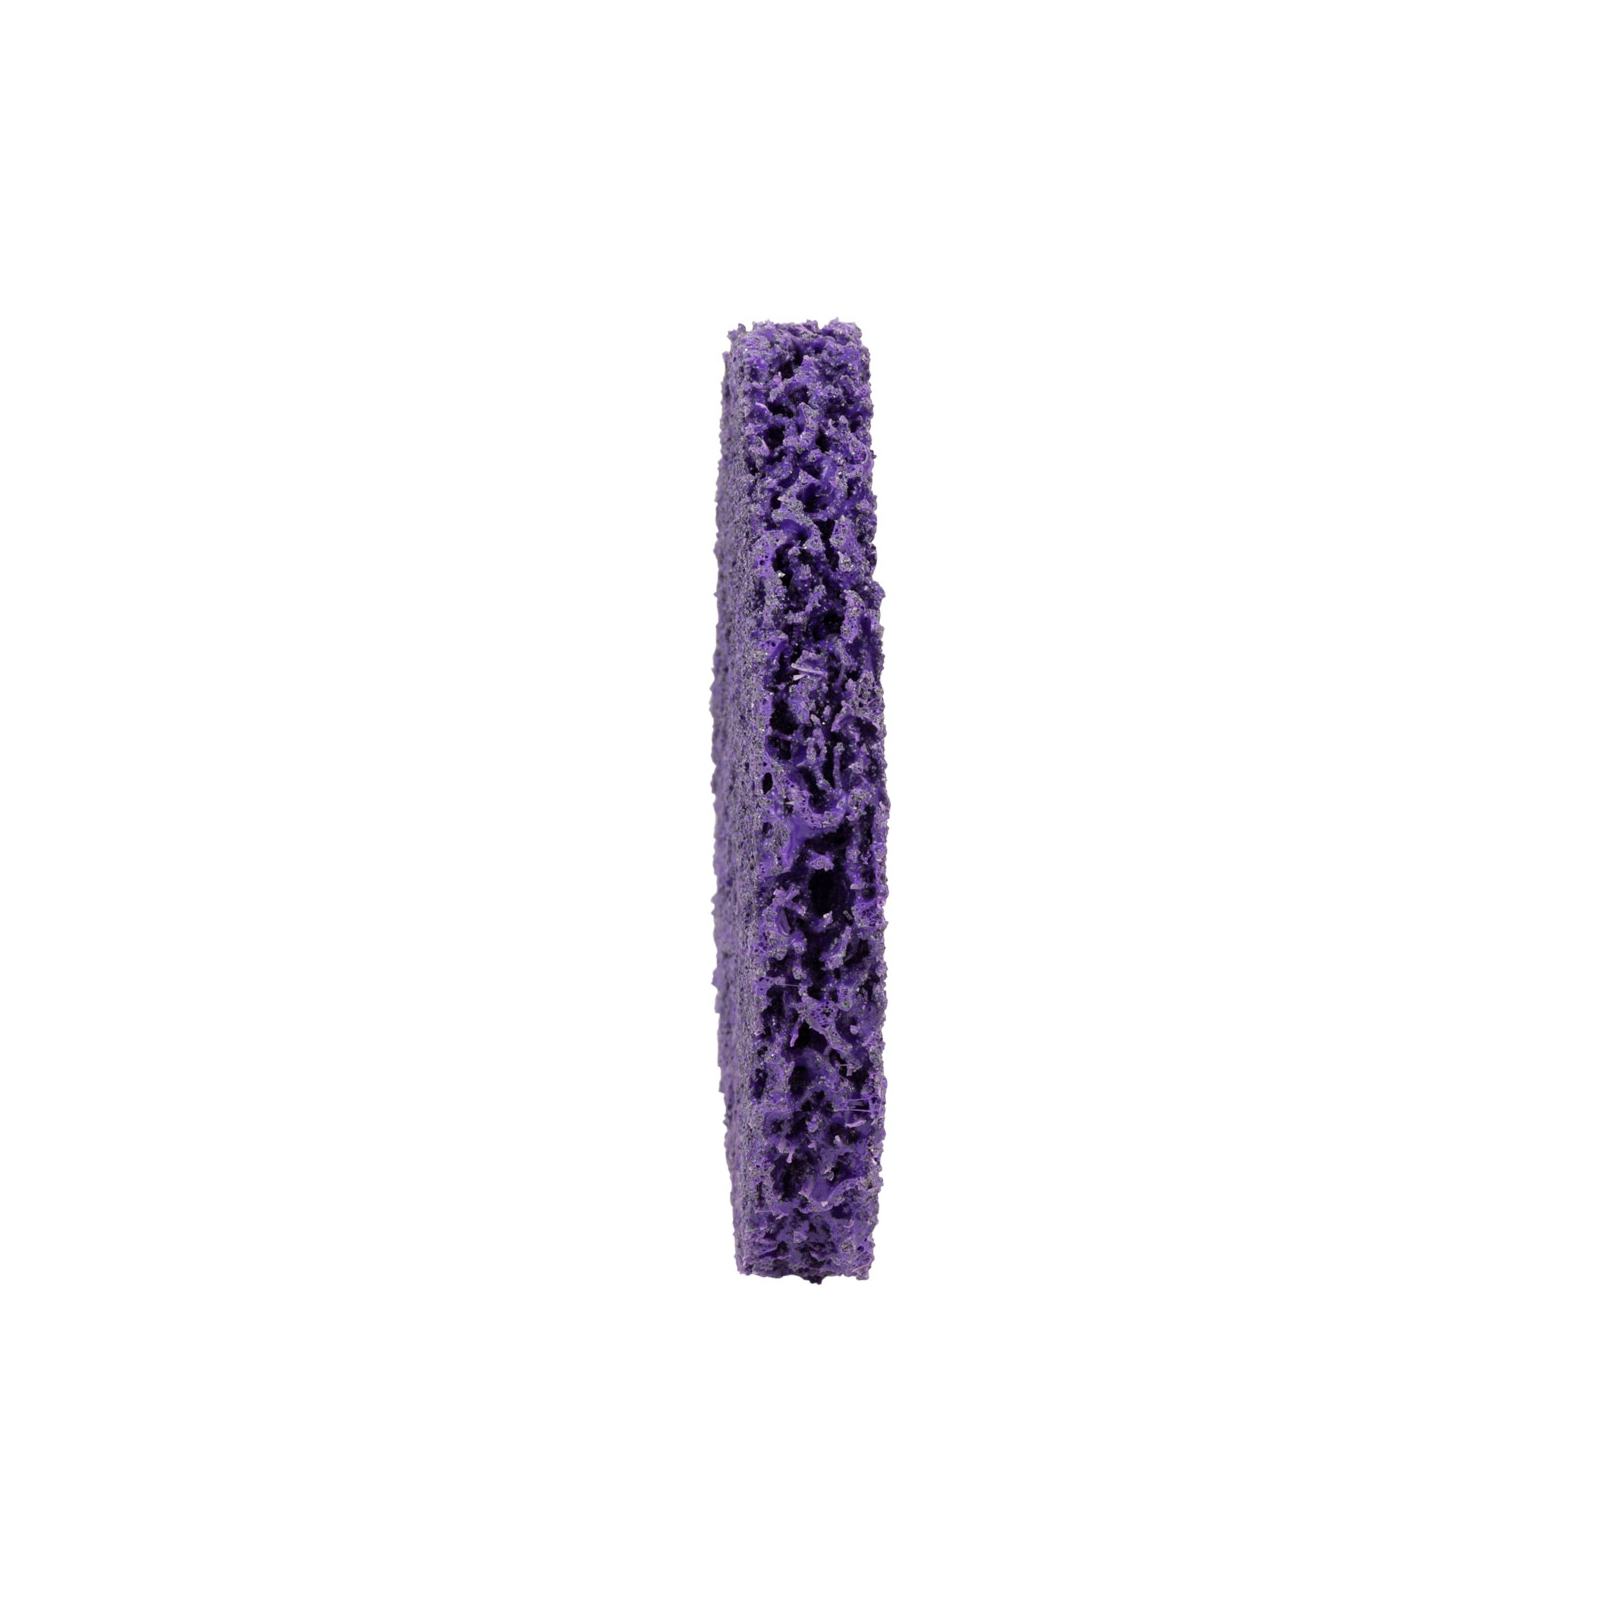 Круг зачистной Sigma из нетканого абразива (коралл) 125мм без держателя фиолетовый жесткий (9175681) изображение 2